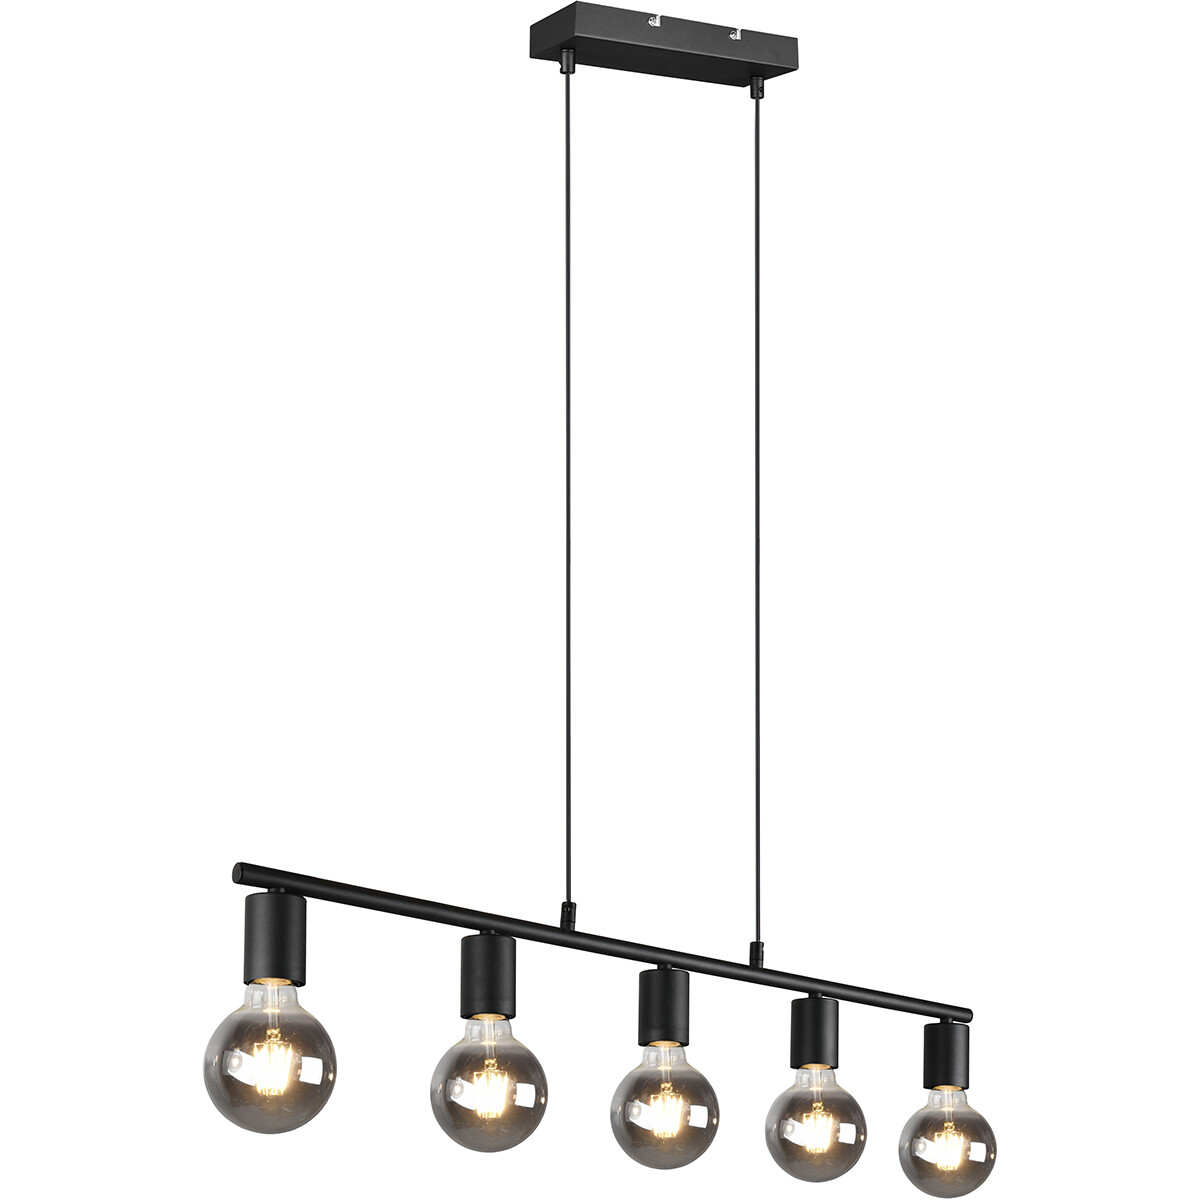 LED Hanglamp - Trion Zuncka - E27 Fitting - 5-lichts - Rechthoek - Mat Zwart - Aluminium